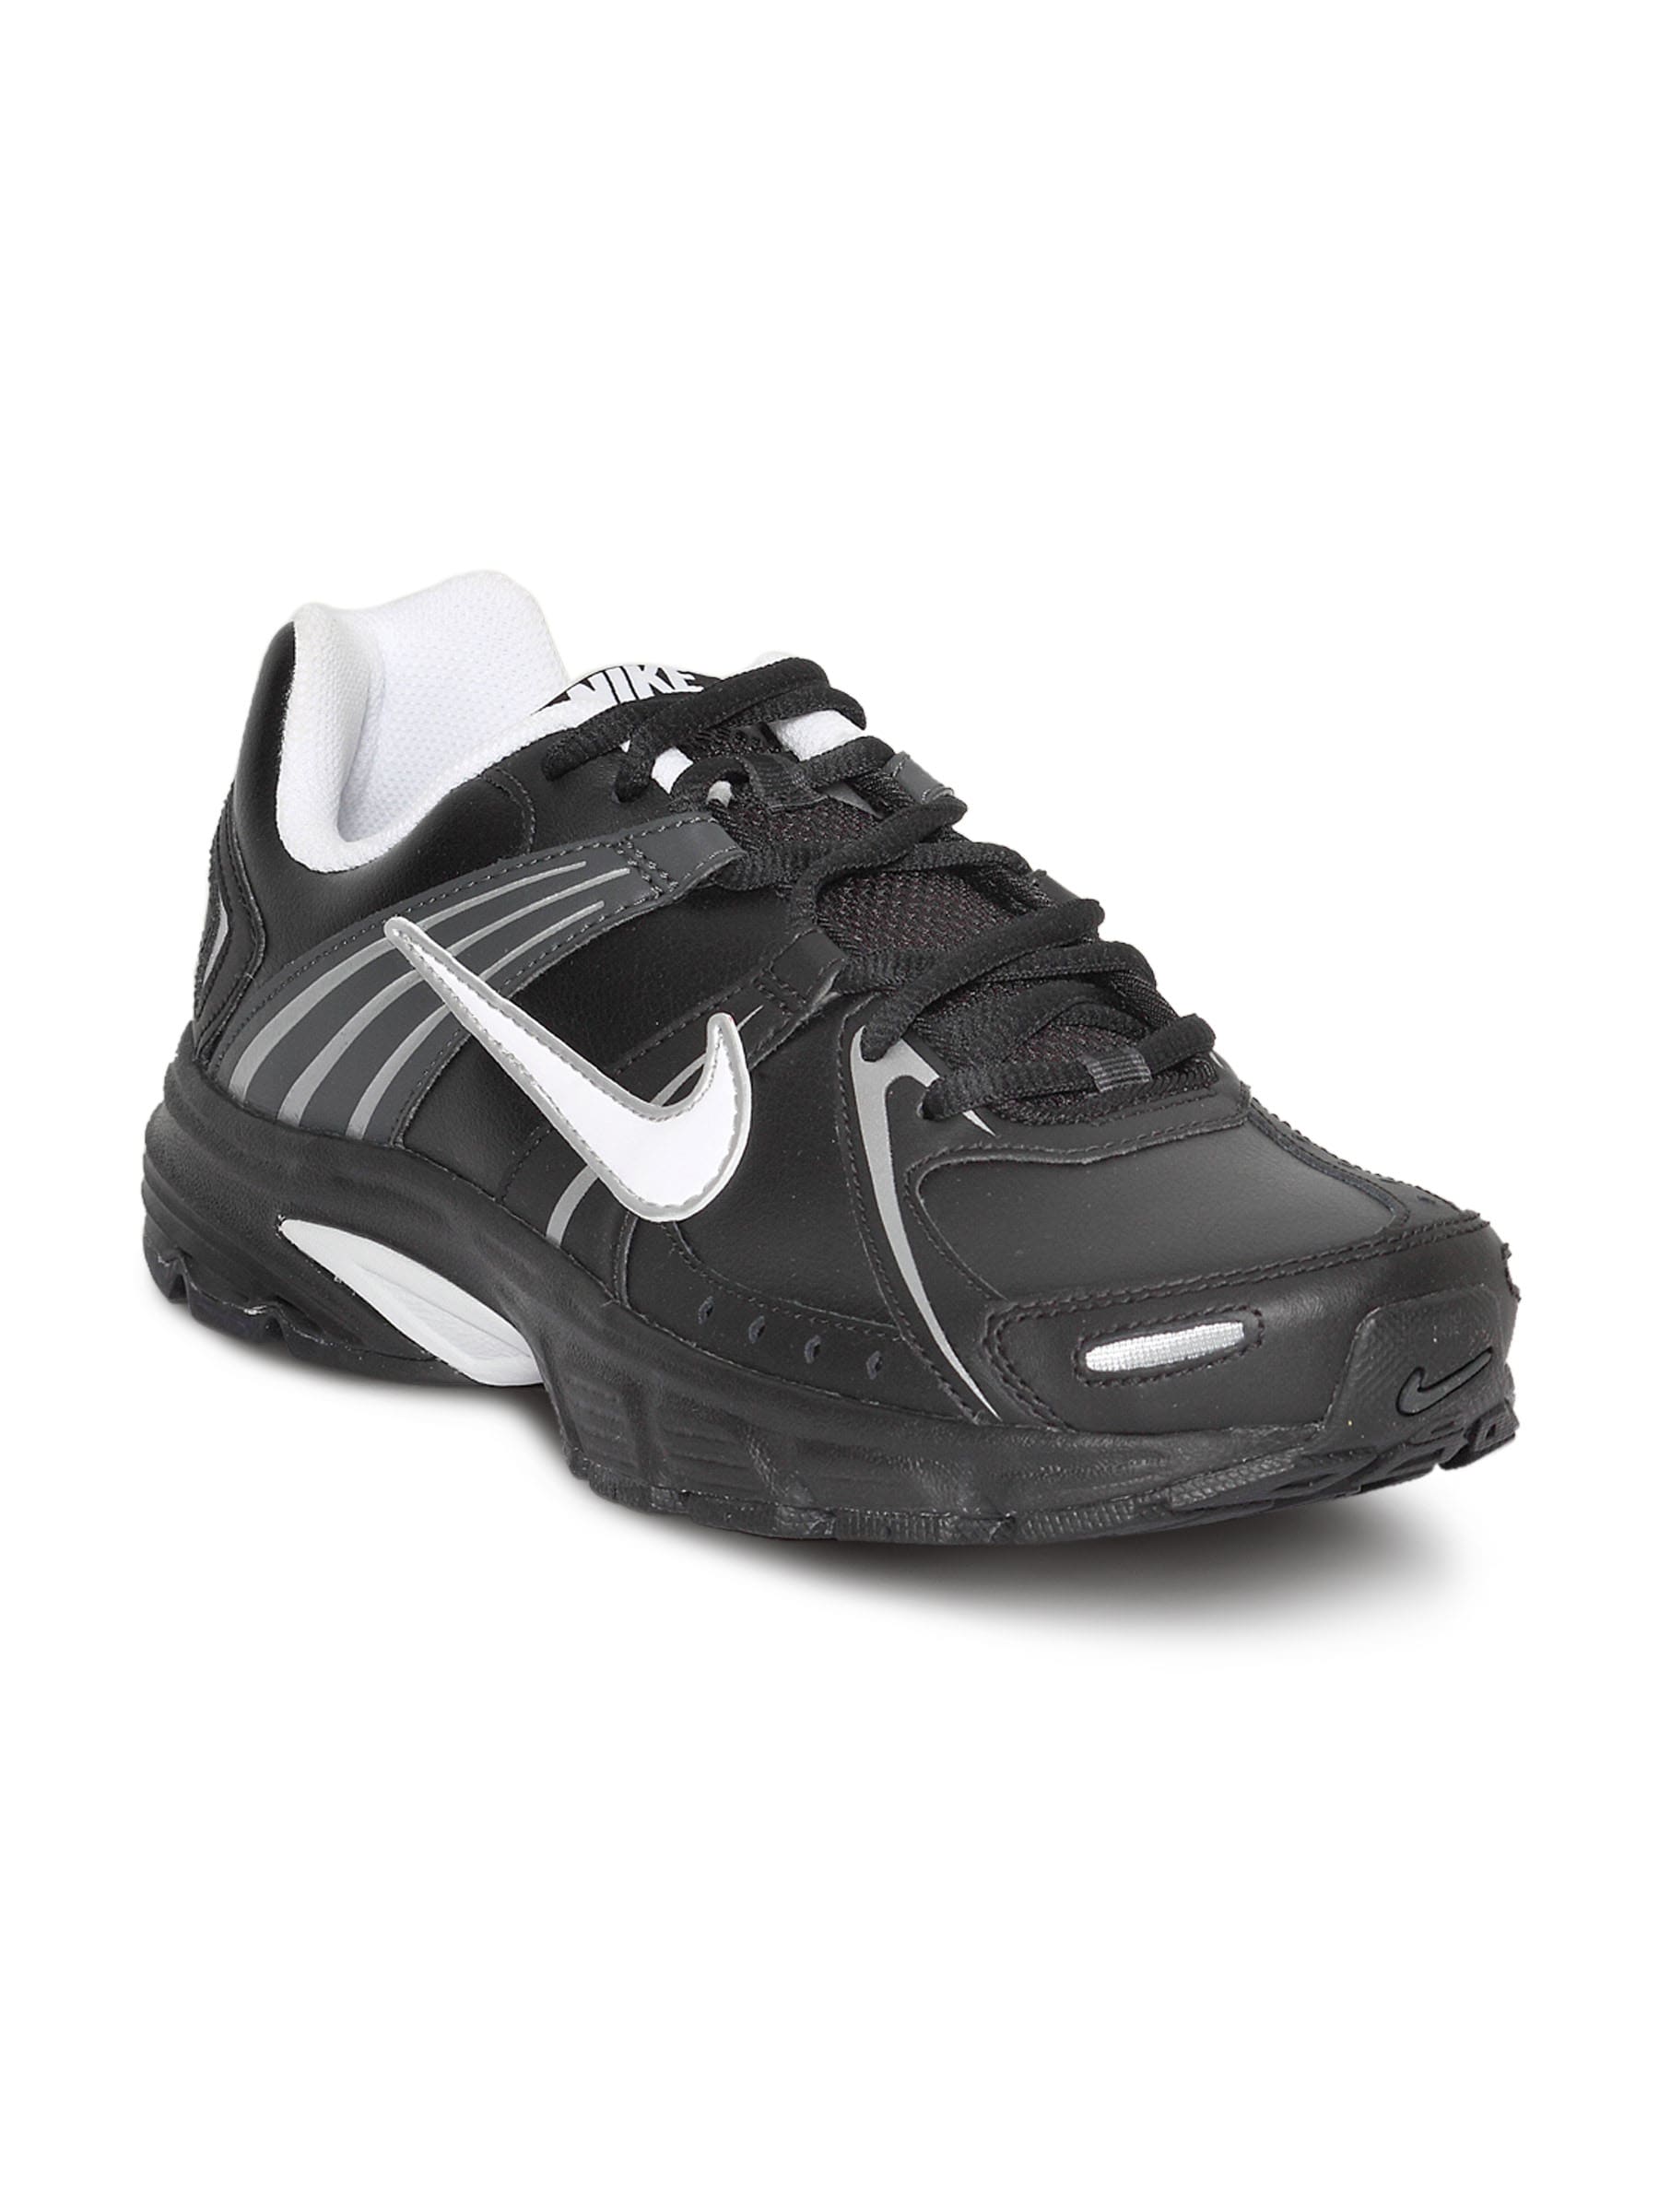 Nike Men's Downshifter Lea Black Shoe